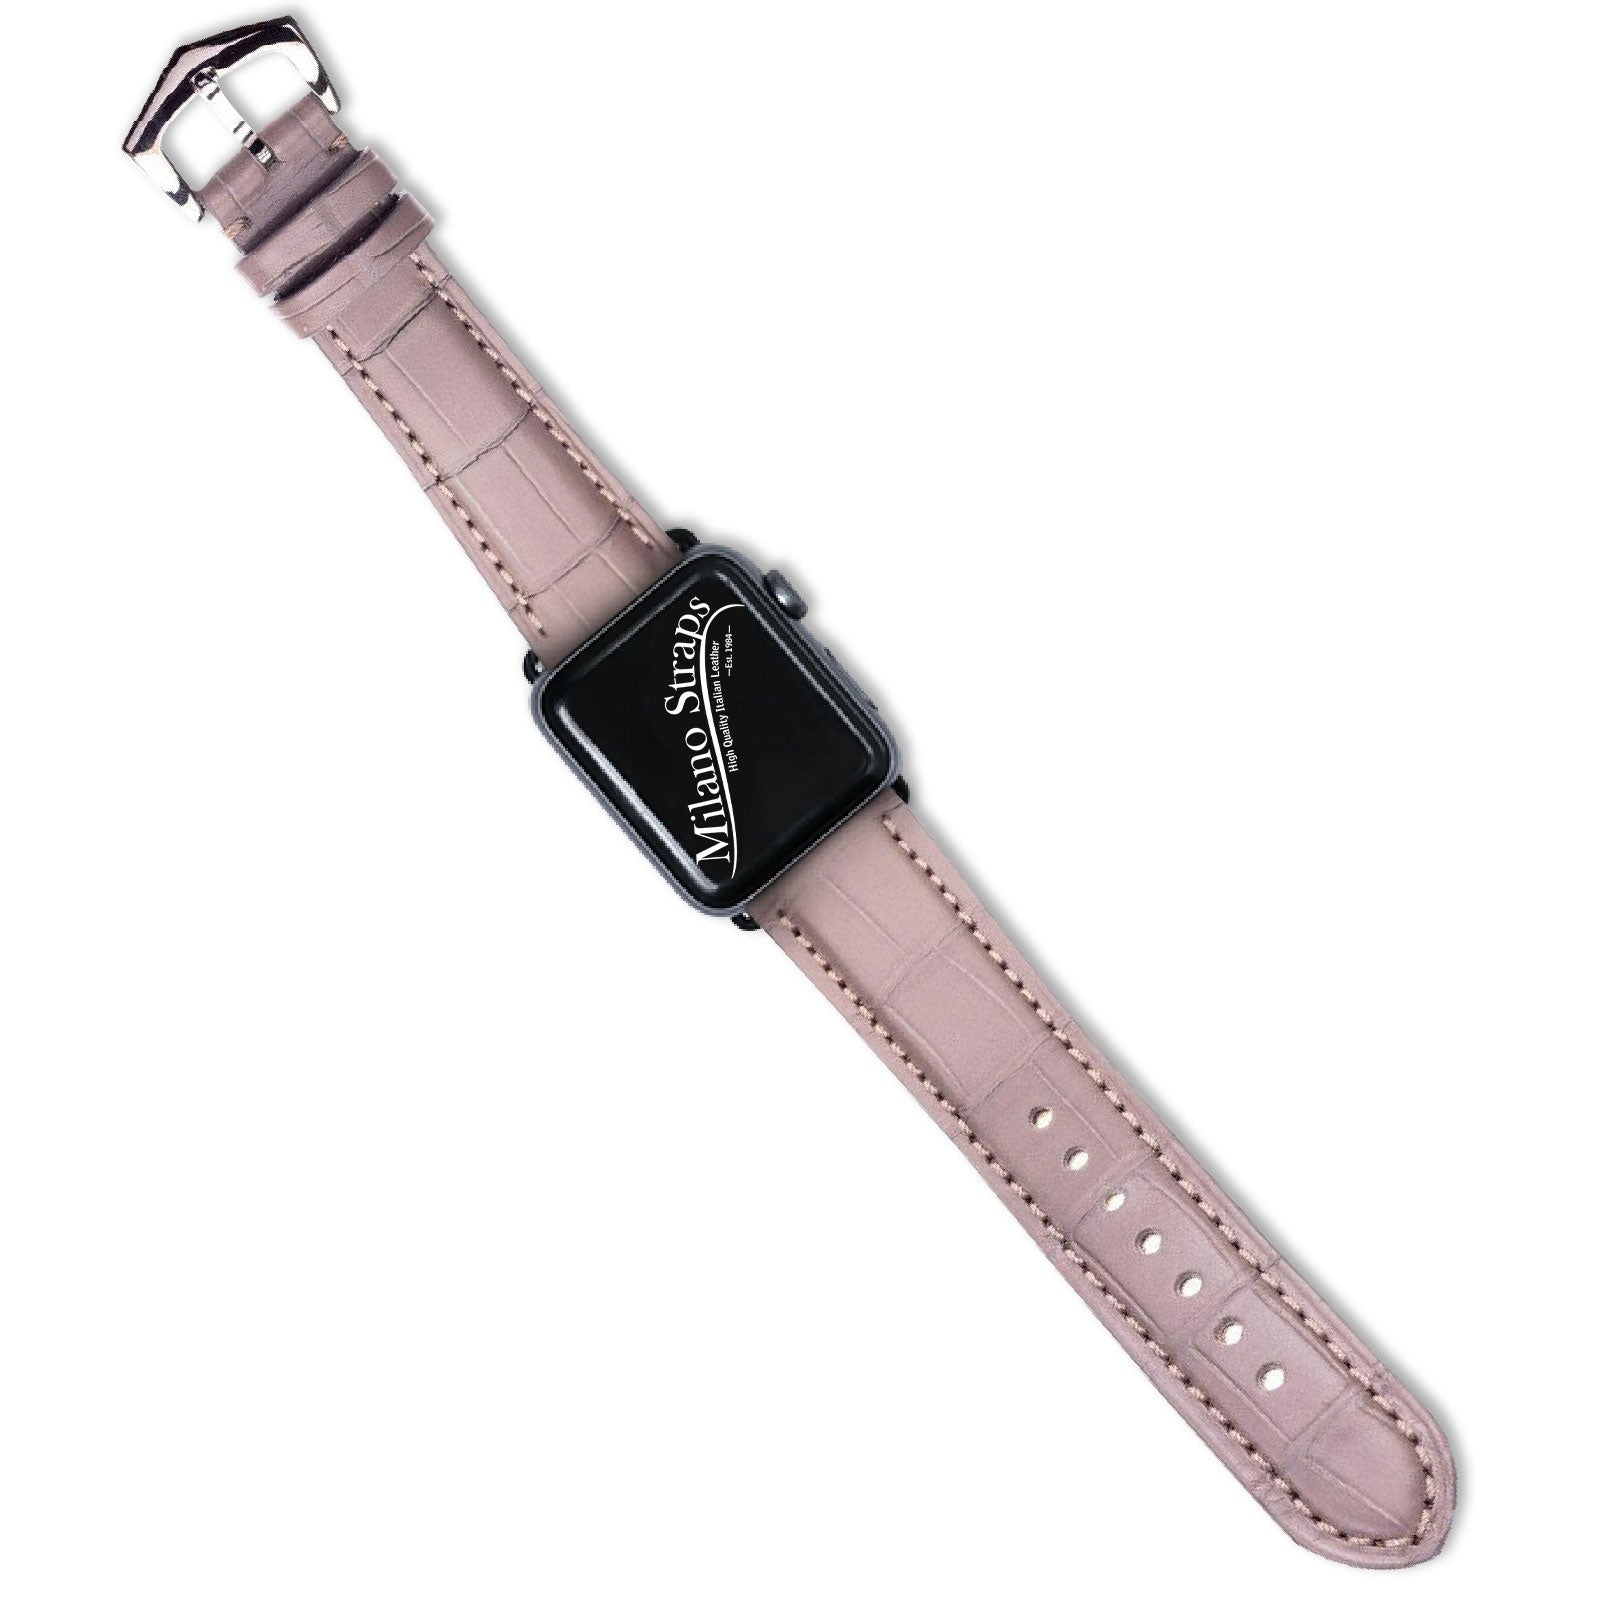 Apple Watch Leather Band ™ Grey Matt Alligator Watch Strap - Milano Straps